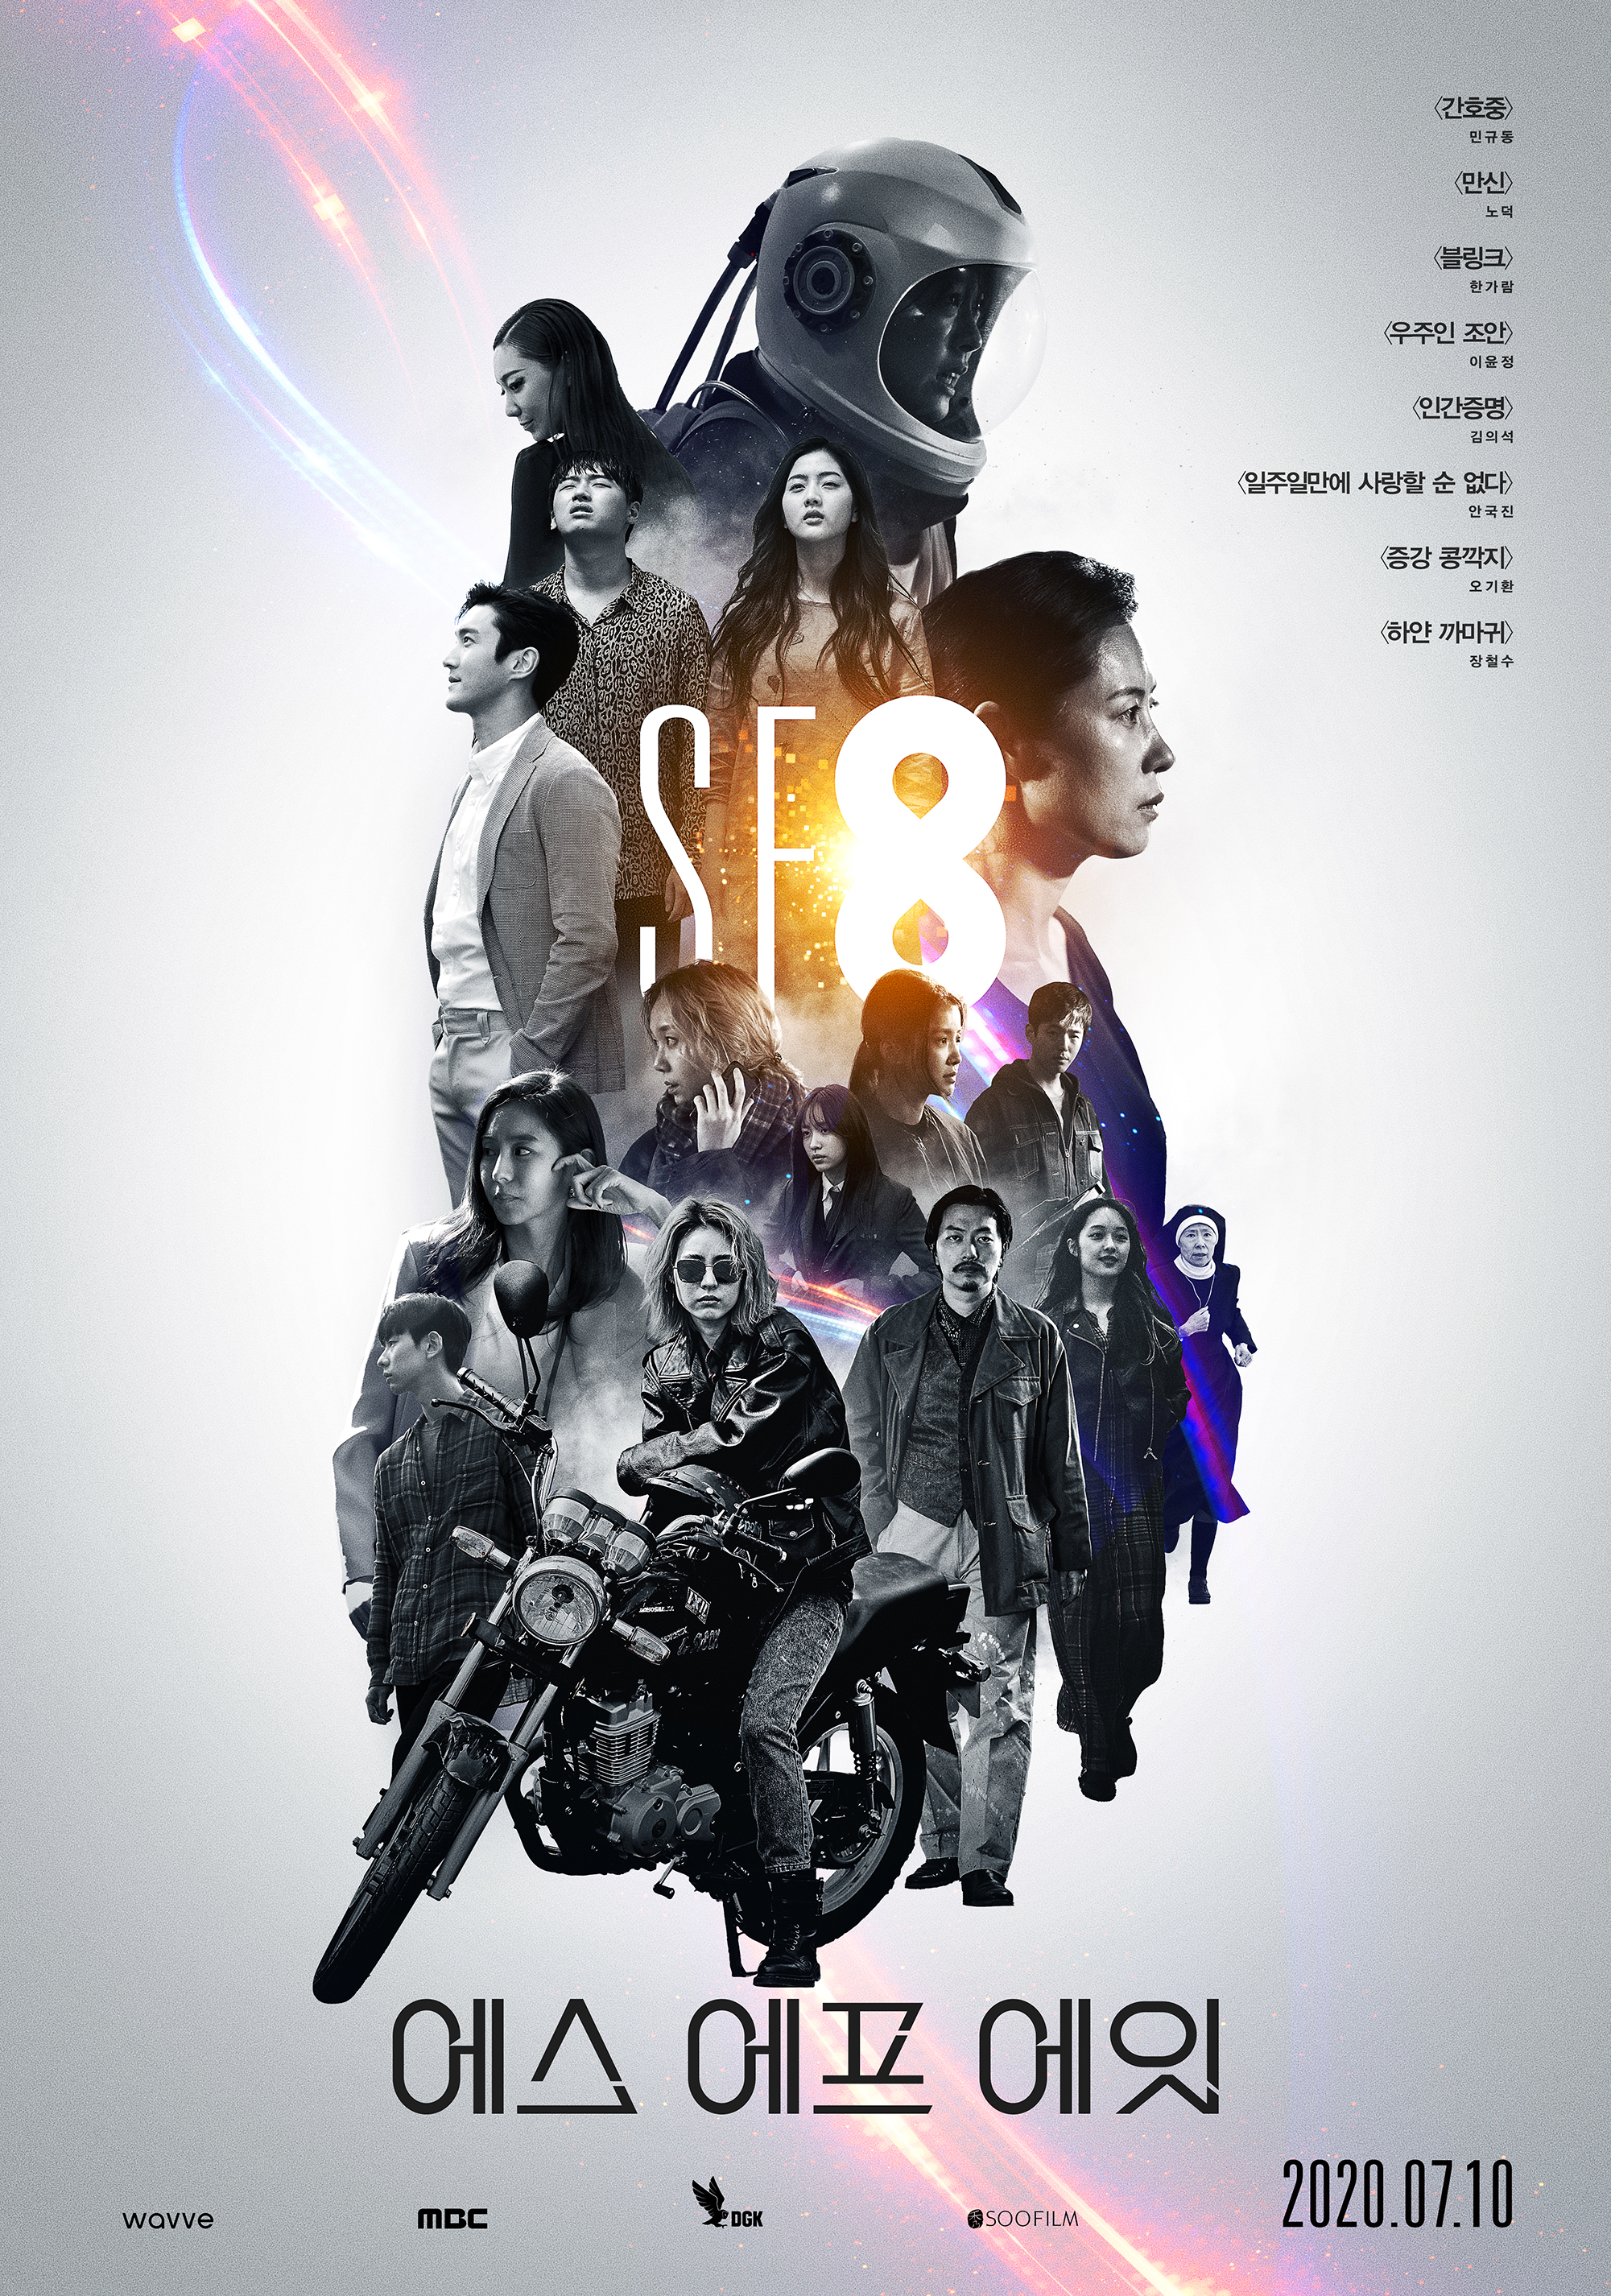 ‘SF8 프로젝트’ 8개의 작품 담아낸 메인 포스터 전격 공개!